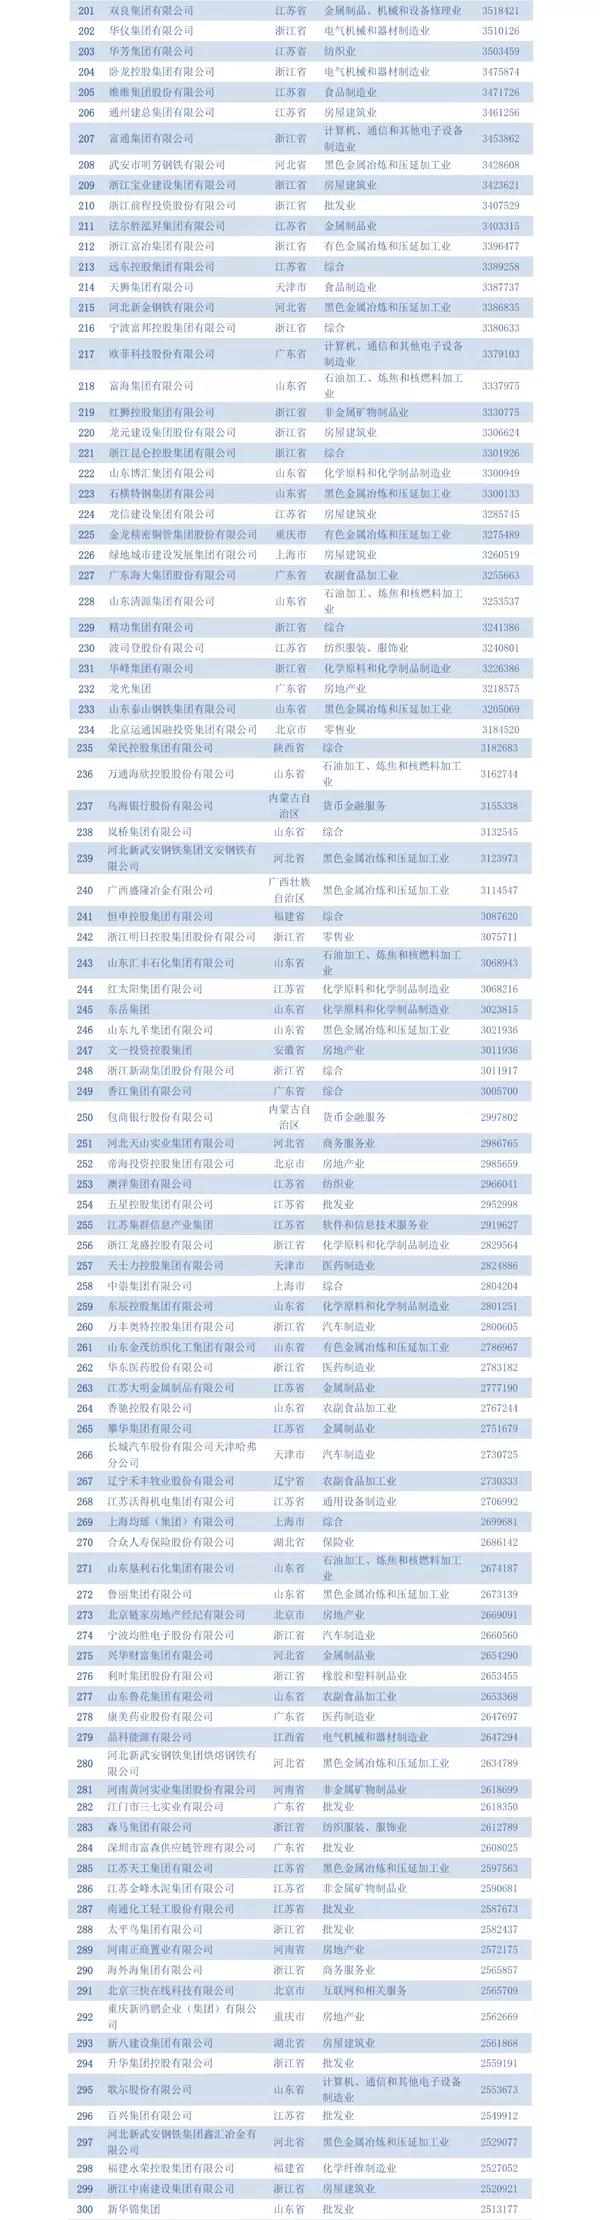 2018中国民营企业五百强名单两百名至三百名